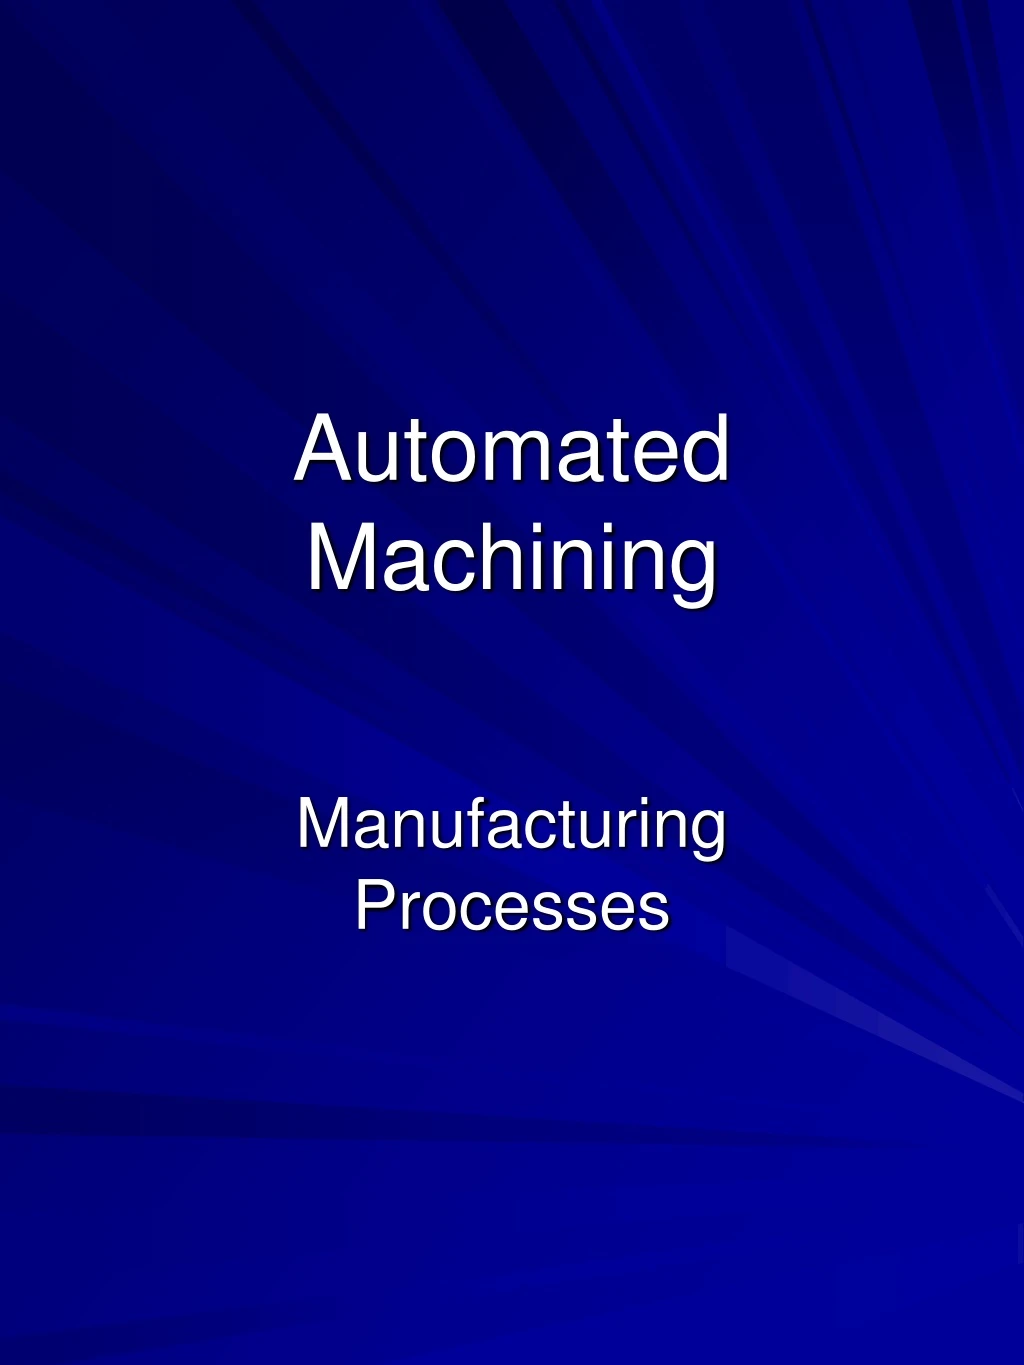 automated machining